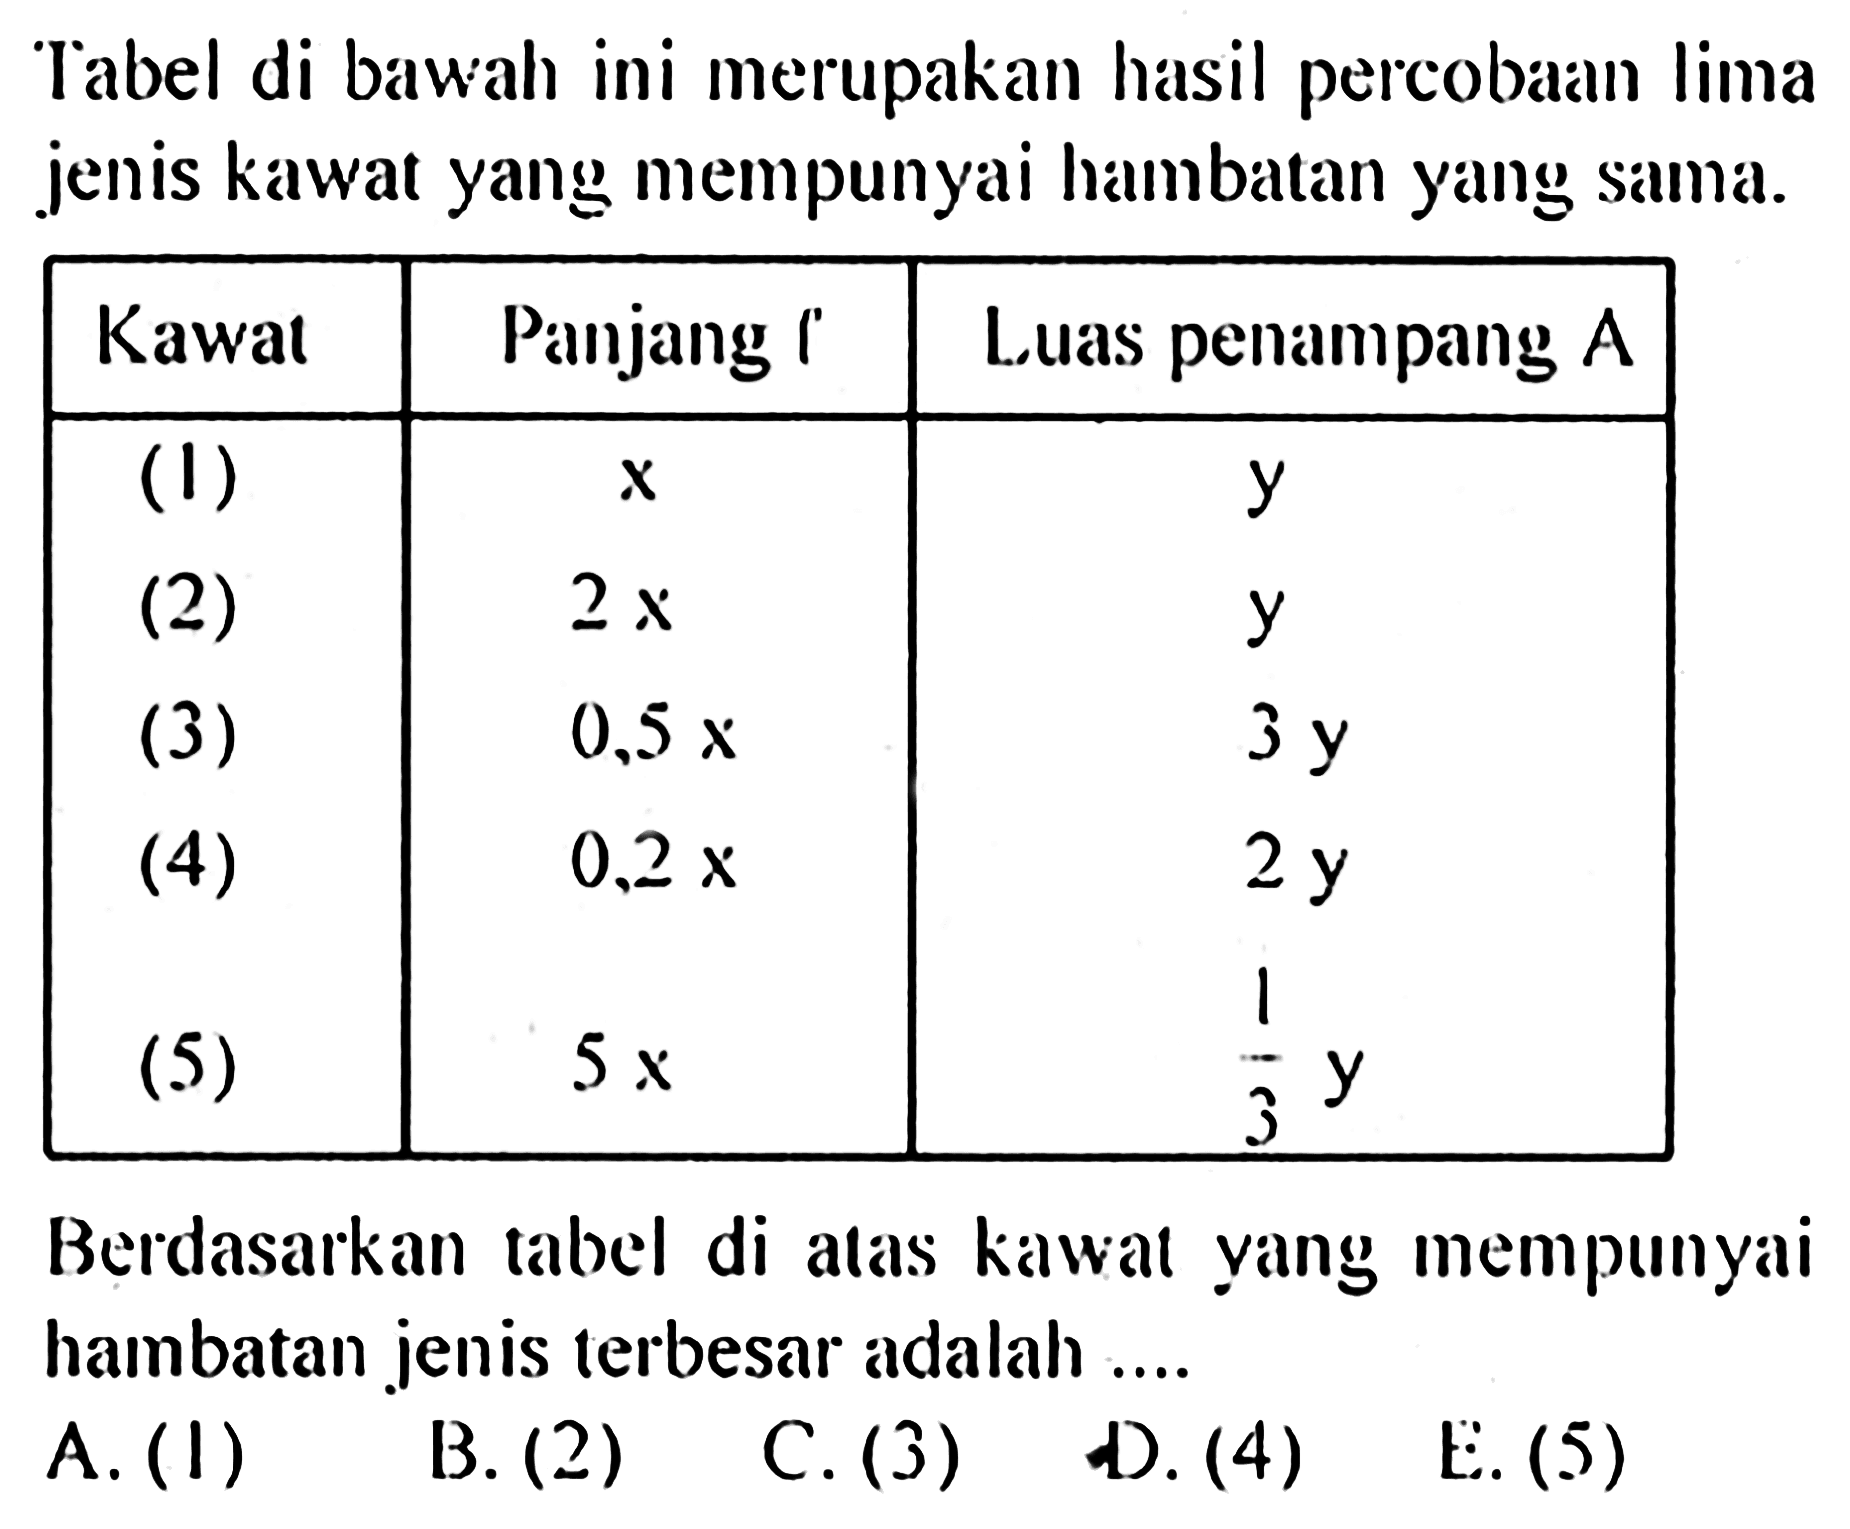 Tabel di bawah ini merupakan hasil percobaan lima jenis kawat yang mempunyai hambatan yang sama. Kawat  Panjang '  Luas penampang A  (1)    x    y   (2)    2x    y   (3)    0,5x    3y   (4)    0,2x    2y   (5)    5x    1/3 y  Berdasarkan tabel di atas kawat yang mempunyai hambatan jenis terbesar adalah ....